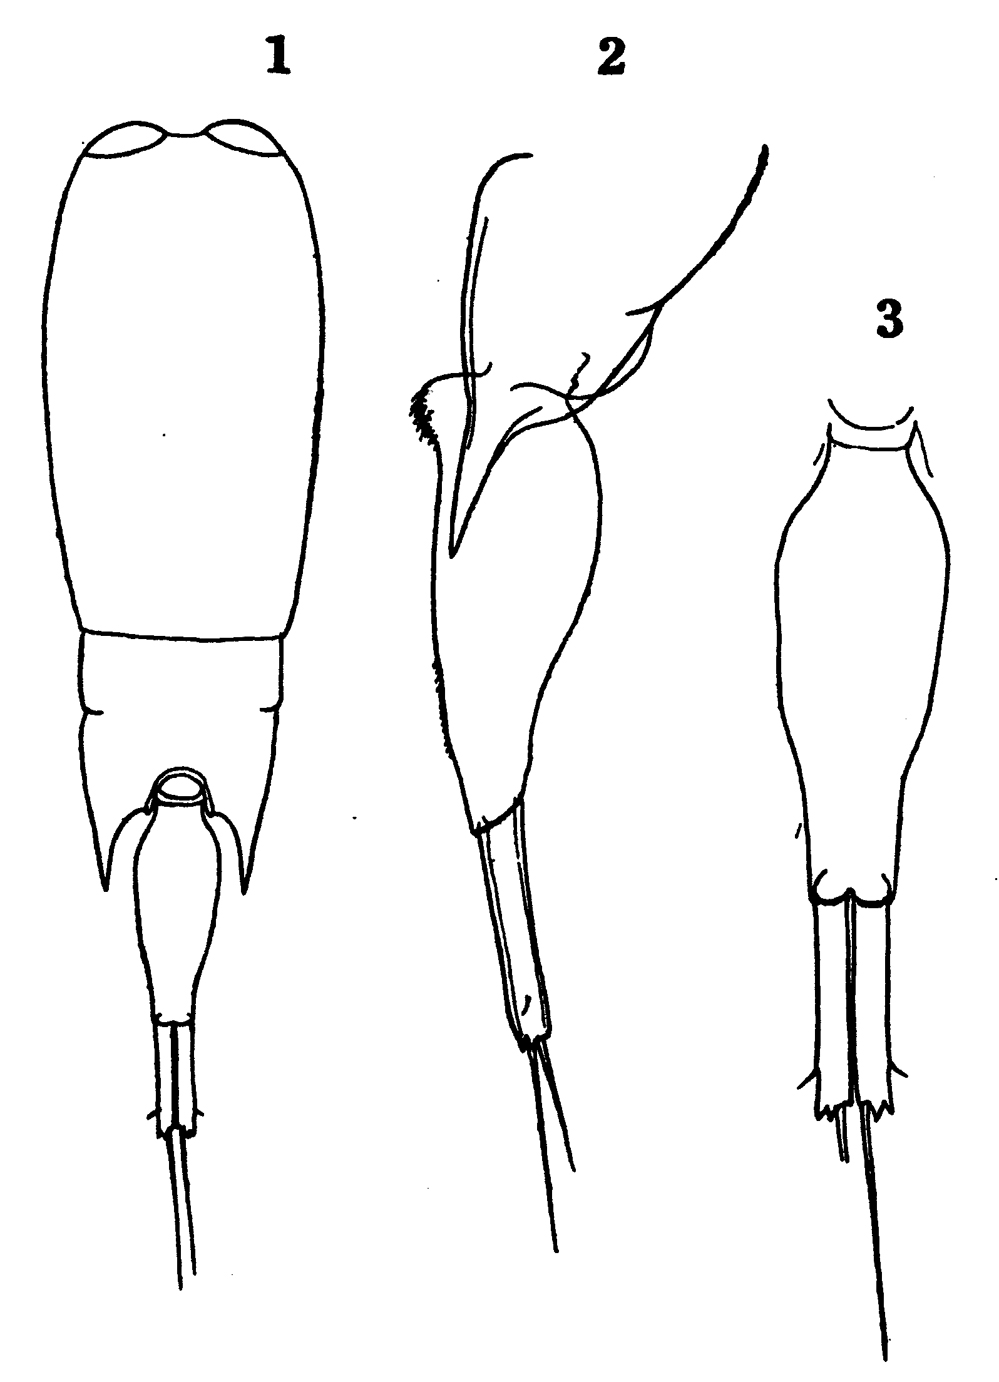 Espce Farranula carinata - Planche 11 de figures morphologiques